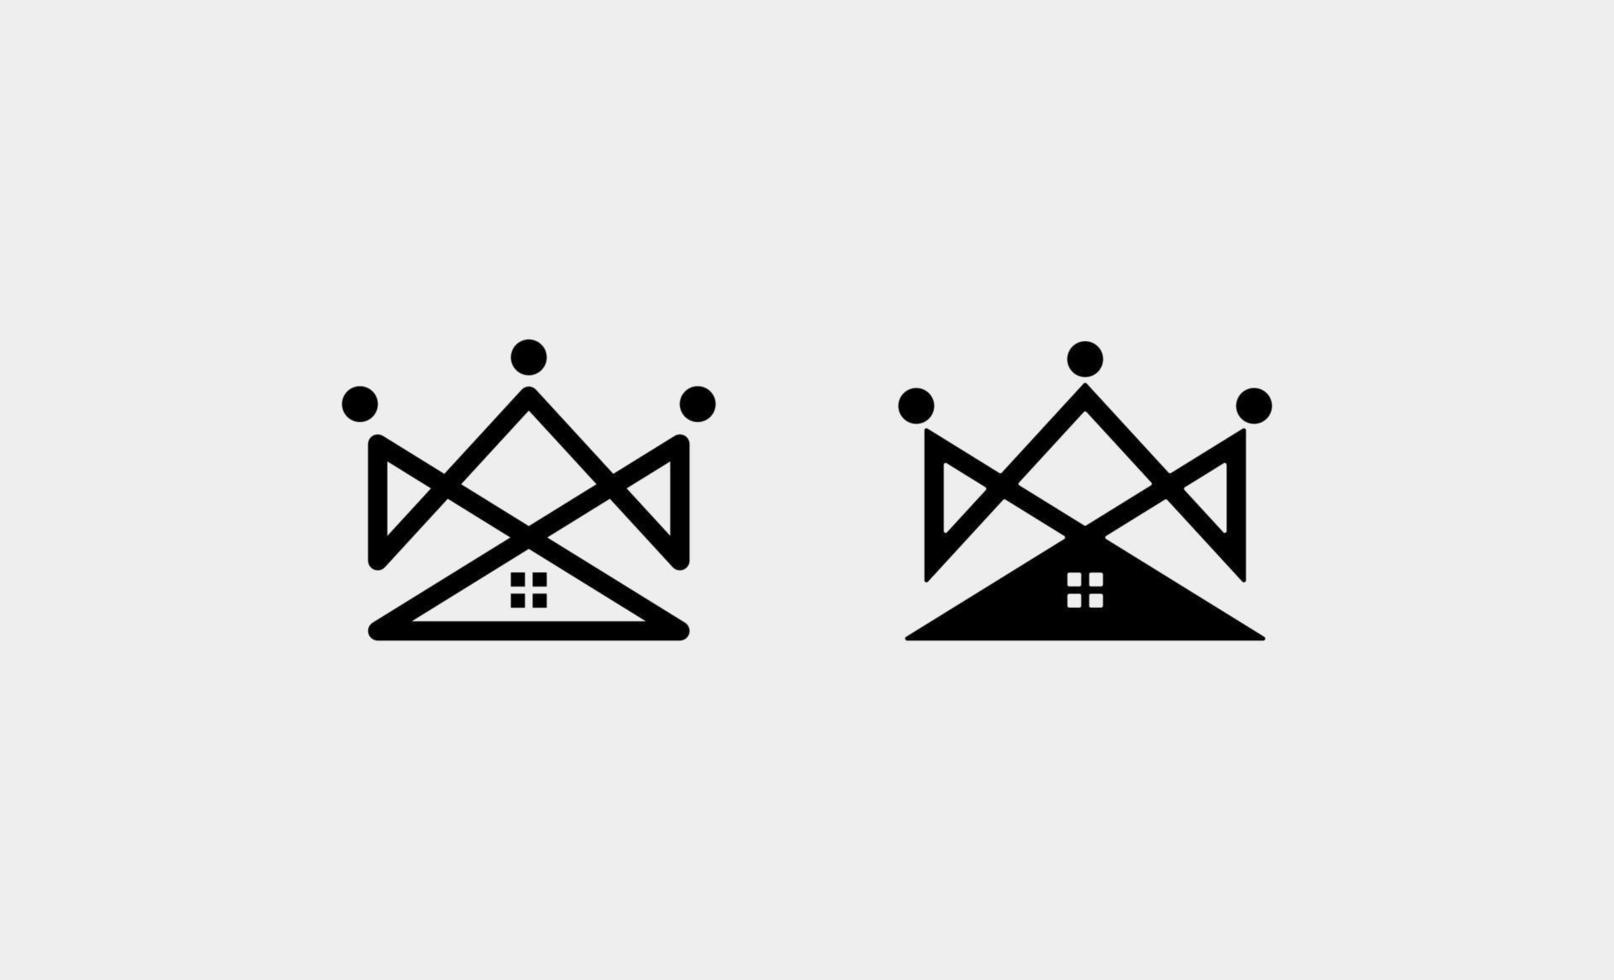 Home King Royal logo Design Vector illustration